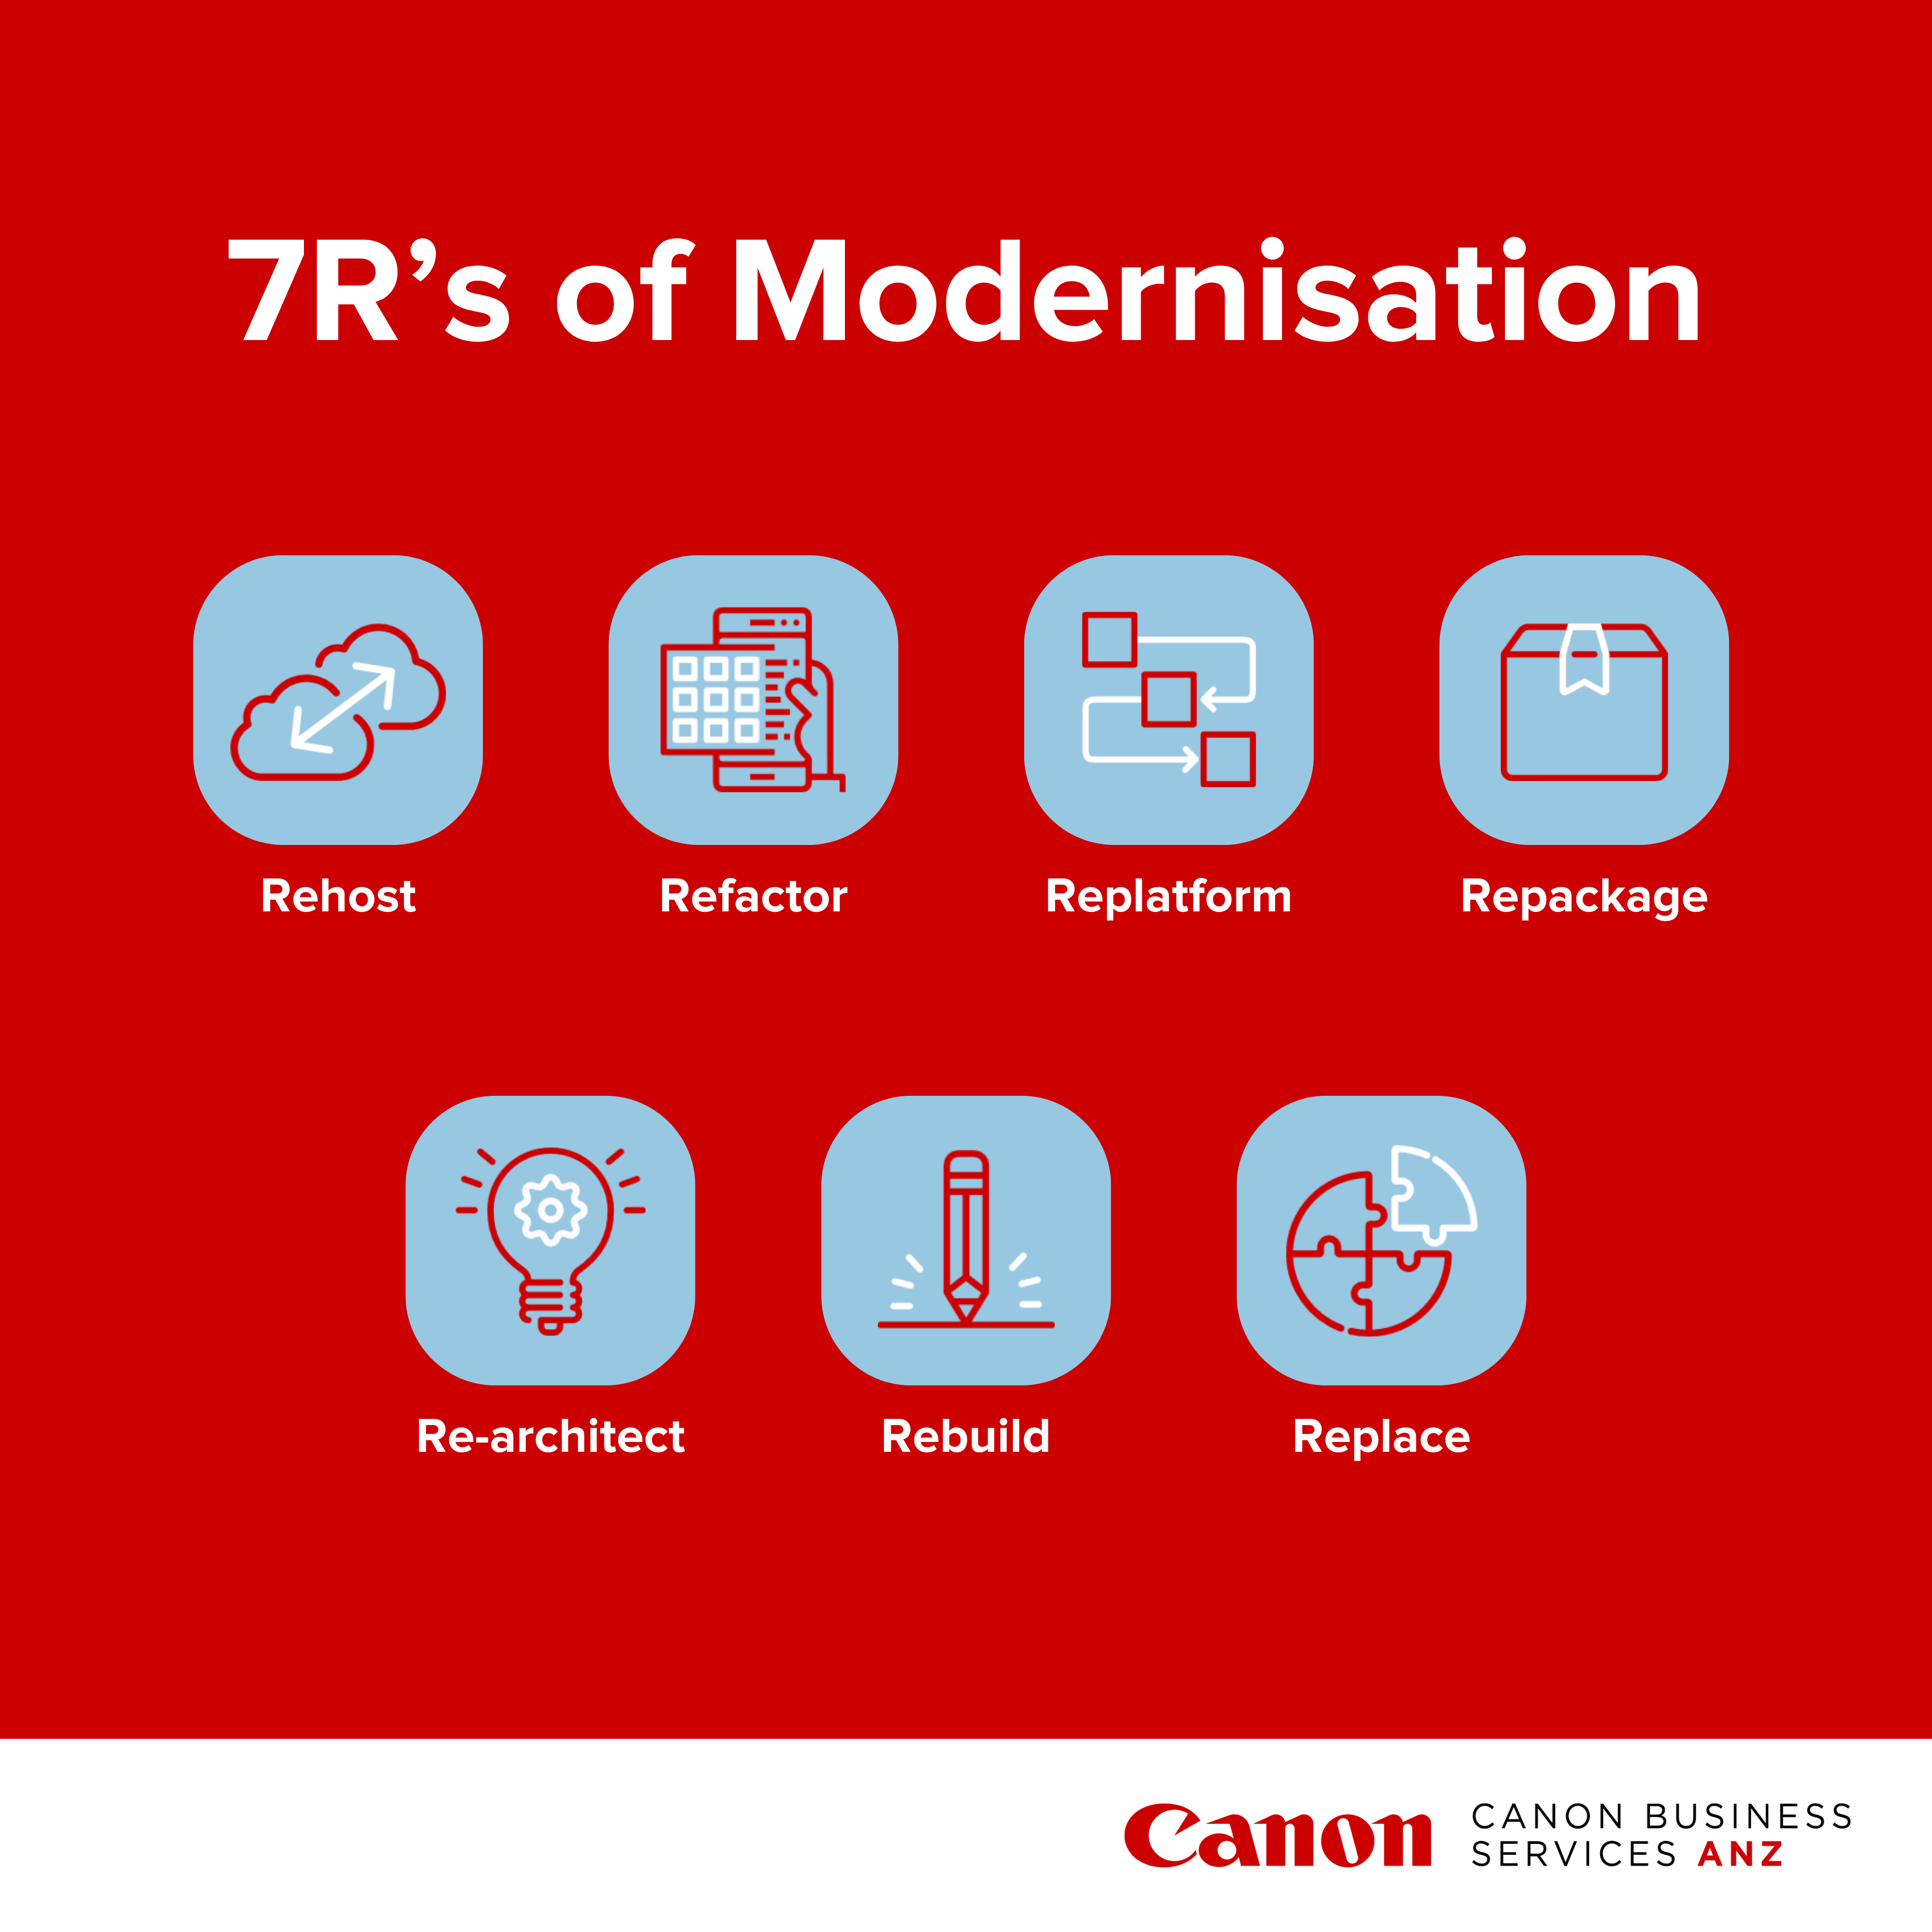 7Rs of Modernisation